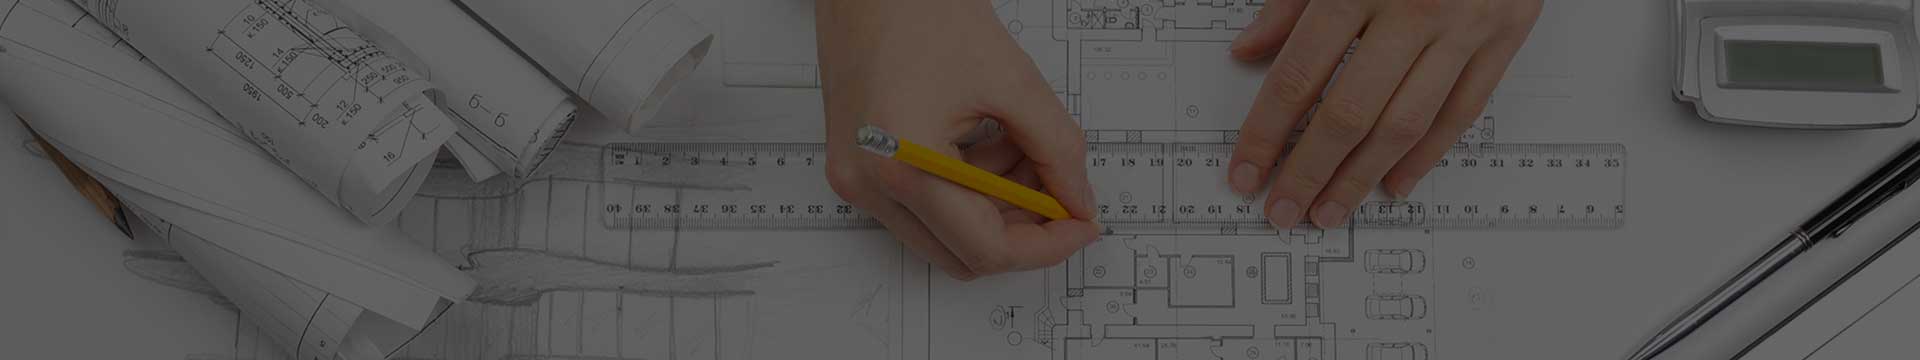 CAD Drafter Manually Drafting Shop Drawings